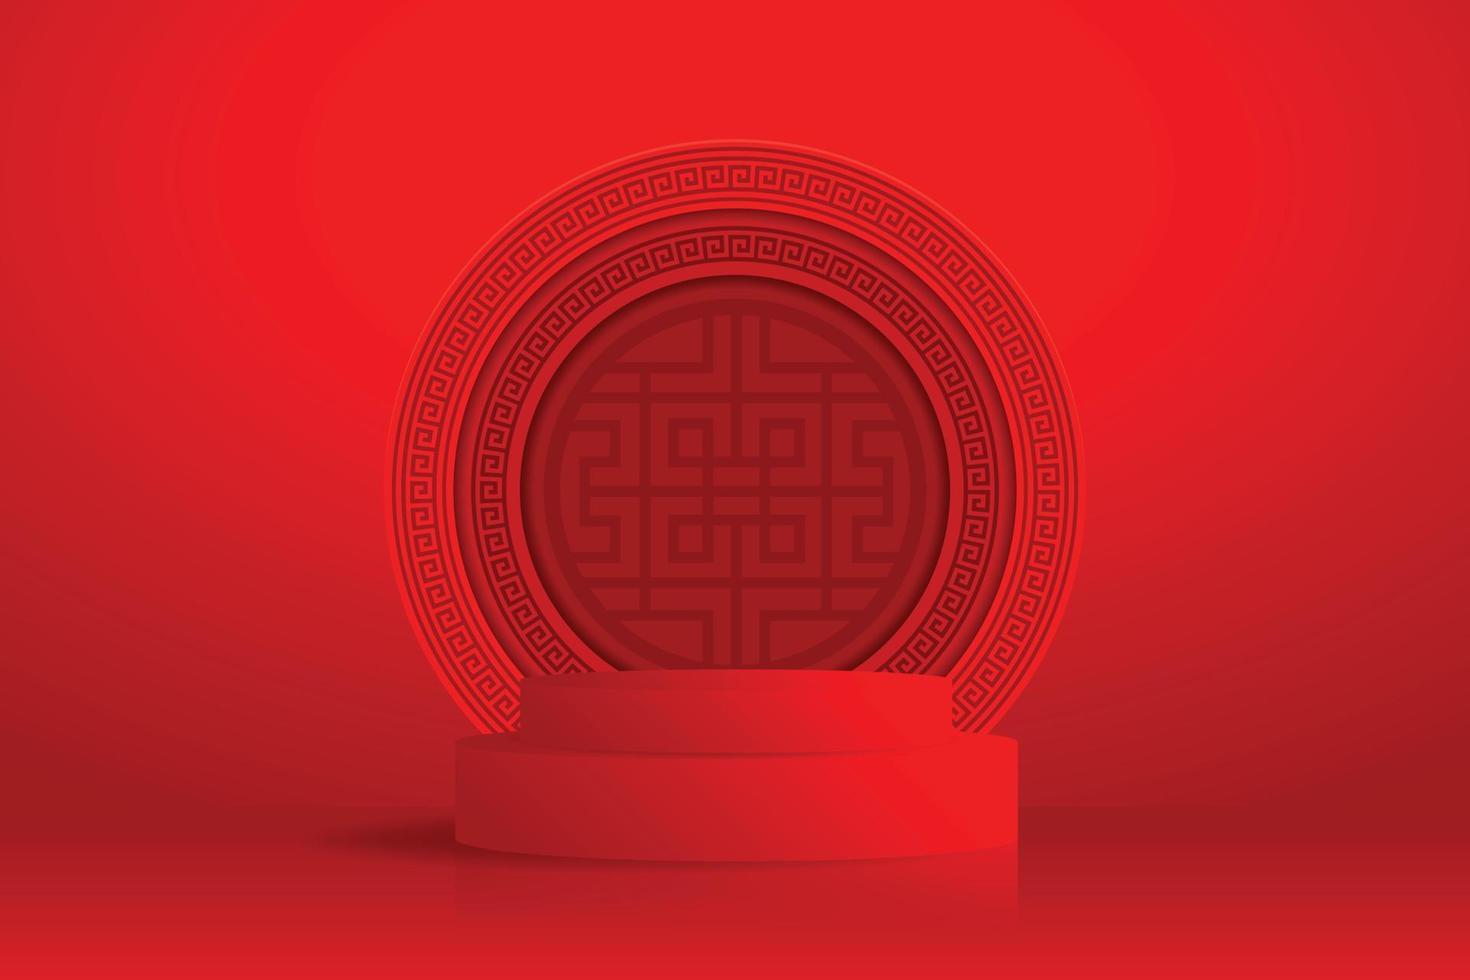 3d podium runde bühne im chinesischen stil, für das chinesische neujahr mit rotem papierschnitt kunst und handwerk auf farbigem hintergrund mit asiatischen elementen, illustrator vektor